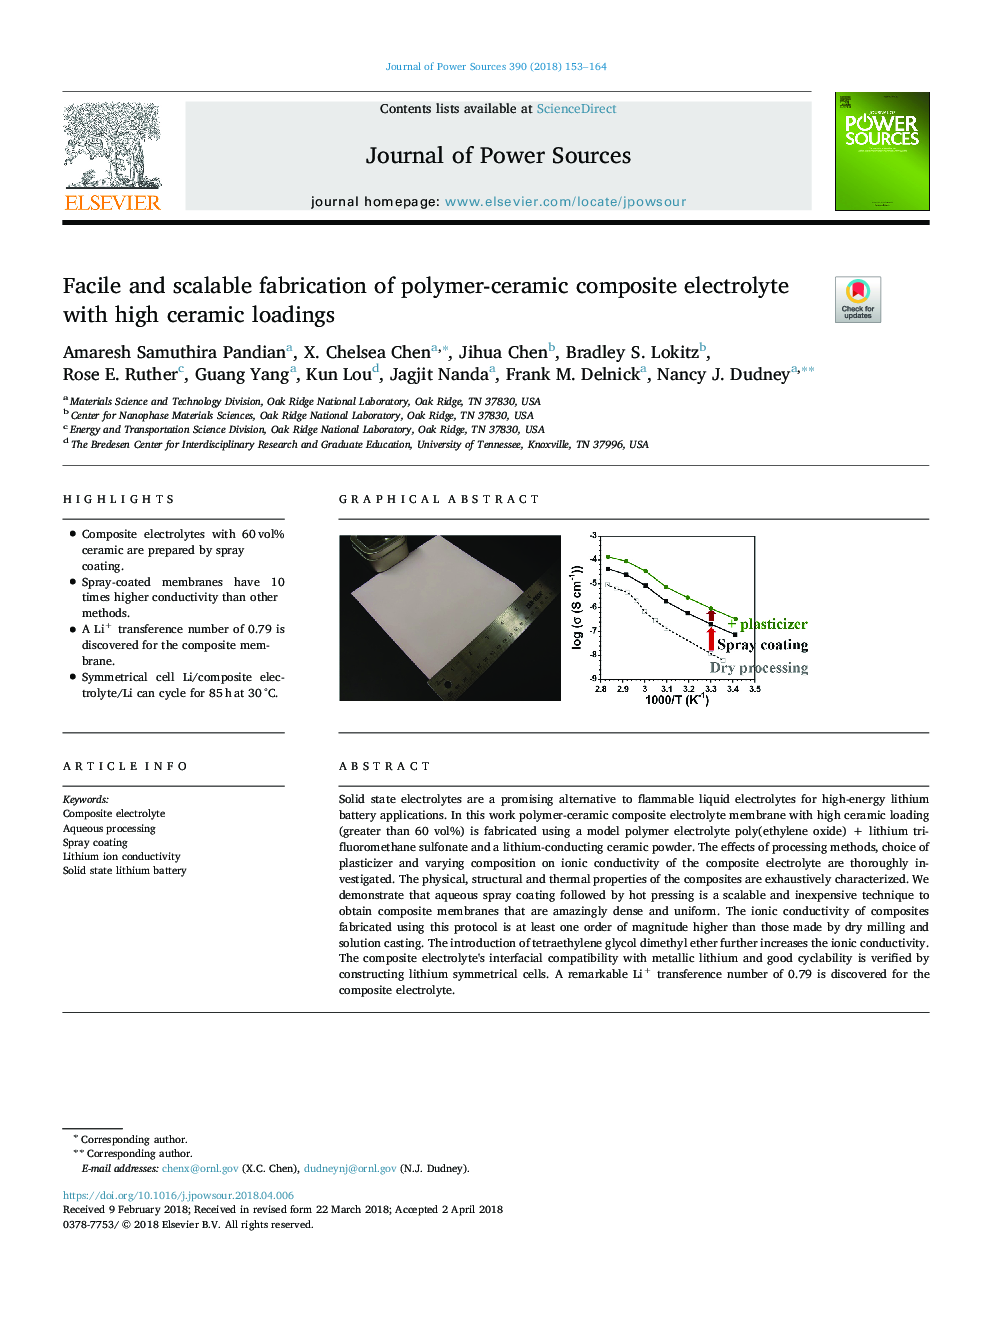 تولید تکه و مقیاس پذیر از الکترولیت کامپوزیت پلیمری سرامیک با بارگذاری سرامیکی بالا 